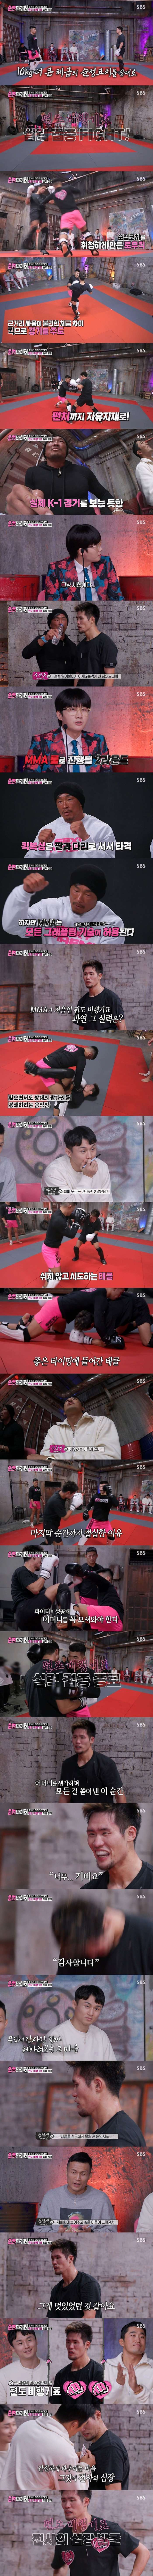 韓国で必ず格闘技選手になりたい理由